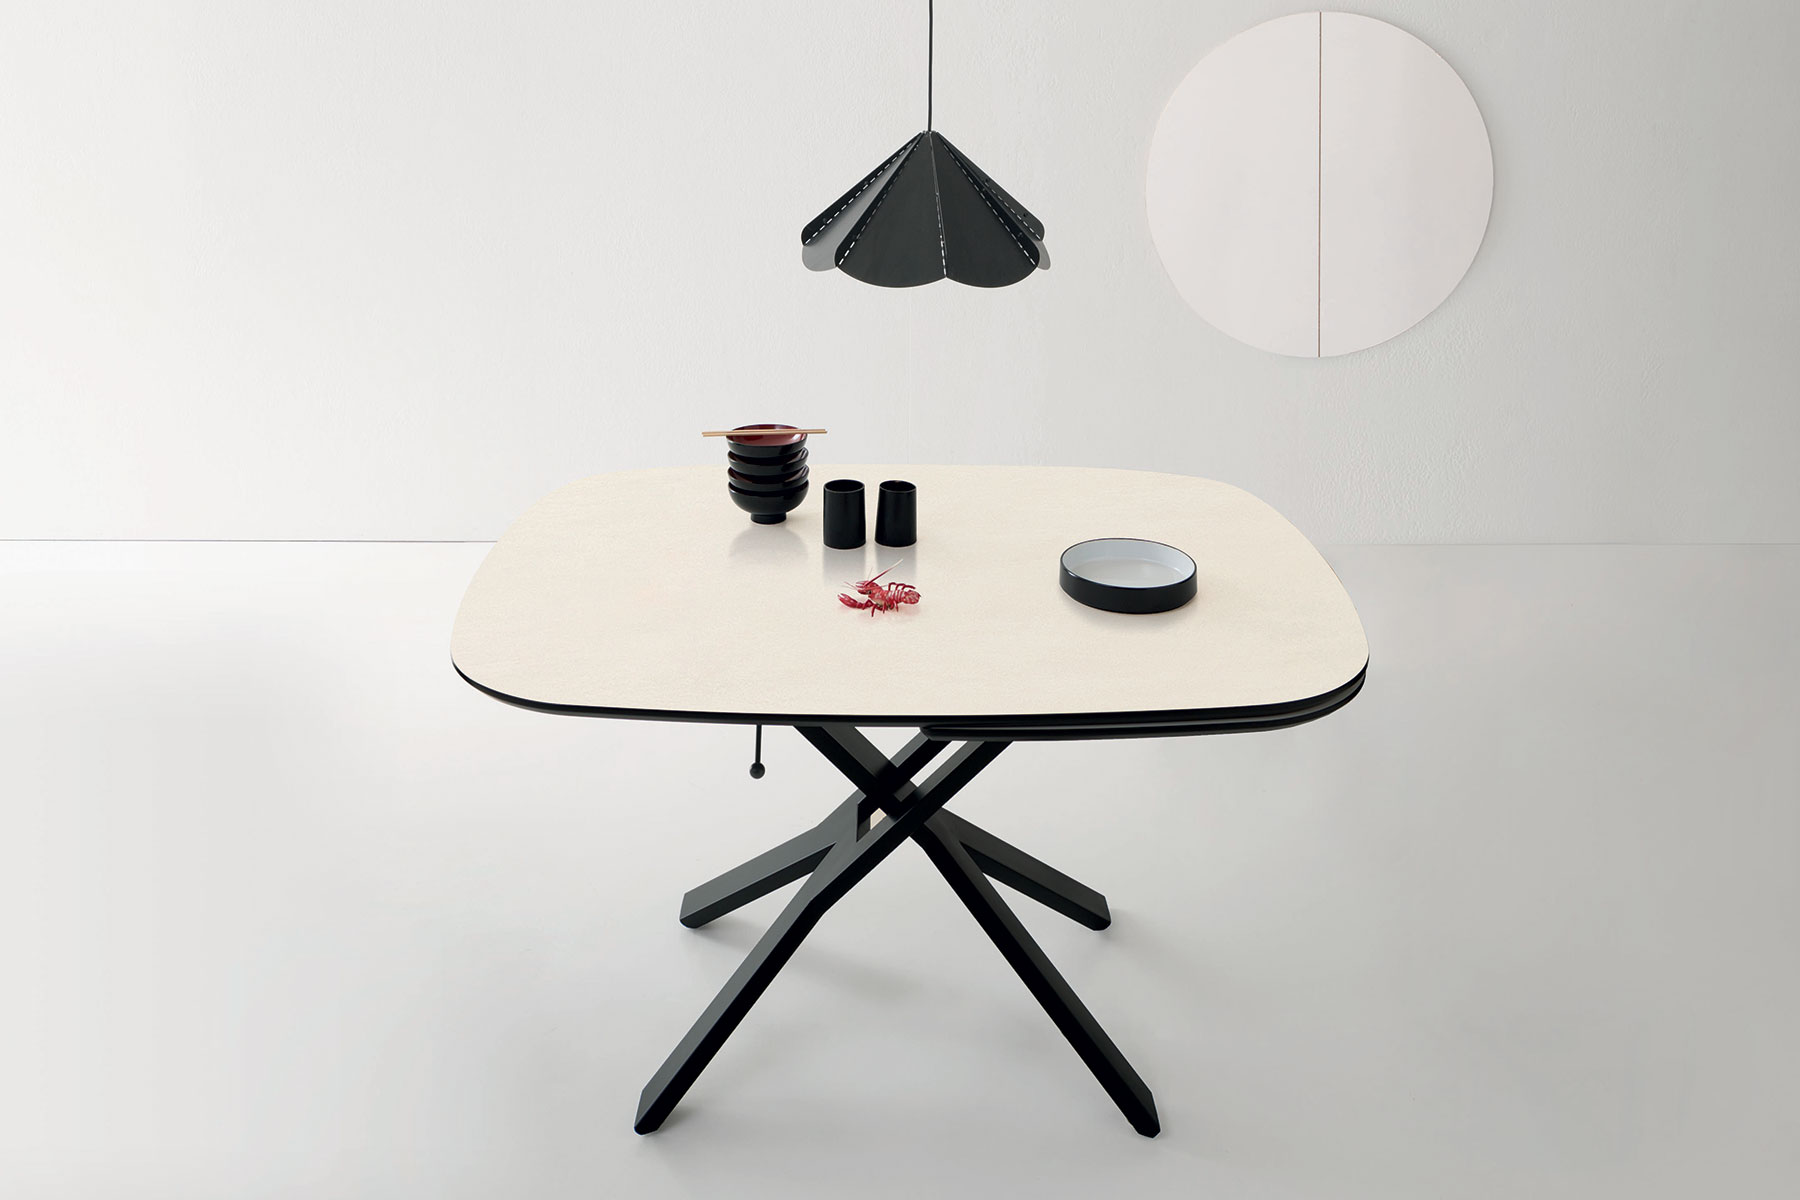 Design Arter & Citton. Table transformable elliptique avec top an céramique blanc, mécanisme à gaz, roulettes. Ameublement haut de gamme en livraison gratuite